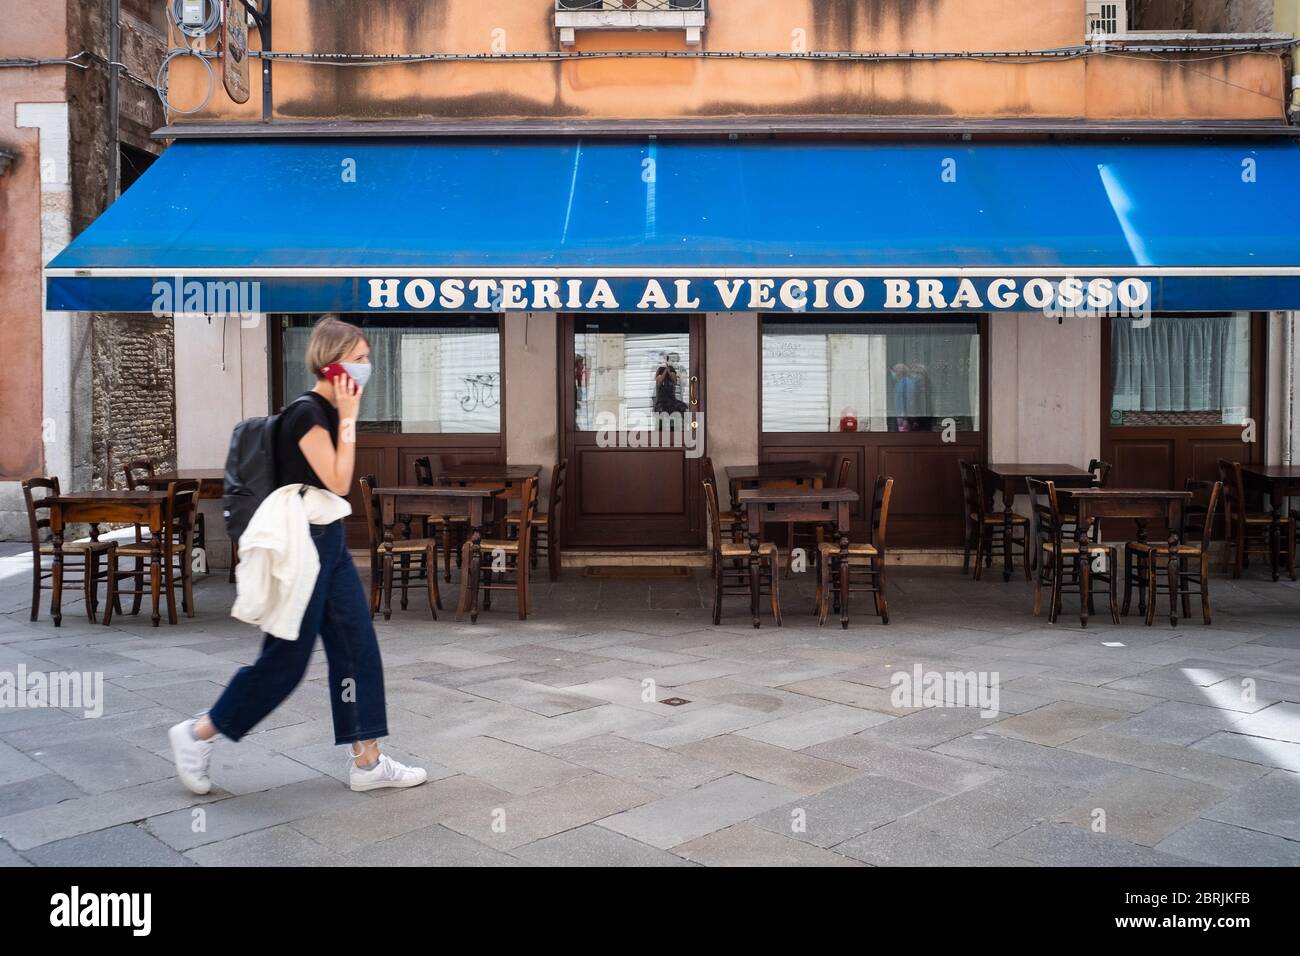 VENEZIA, ITALIA - MAGGIO: Una donna cammina di fronte ad un ristorante appena riaperto il 18 maggio 2020 a Venezia. Ristoranti, bar, caffè, parrucchiere e. Foto Stock